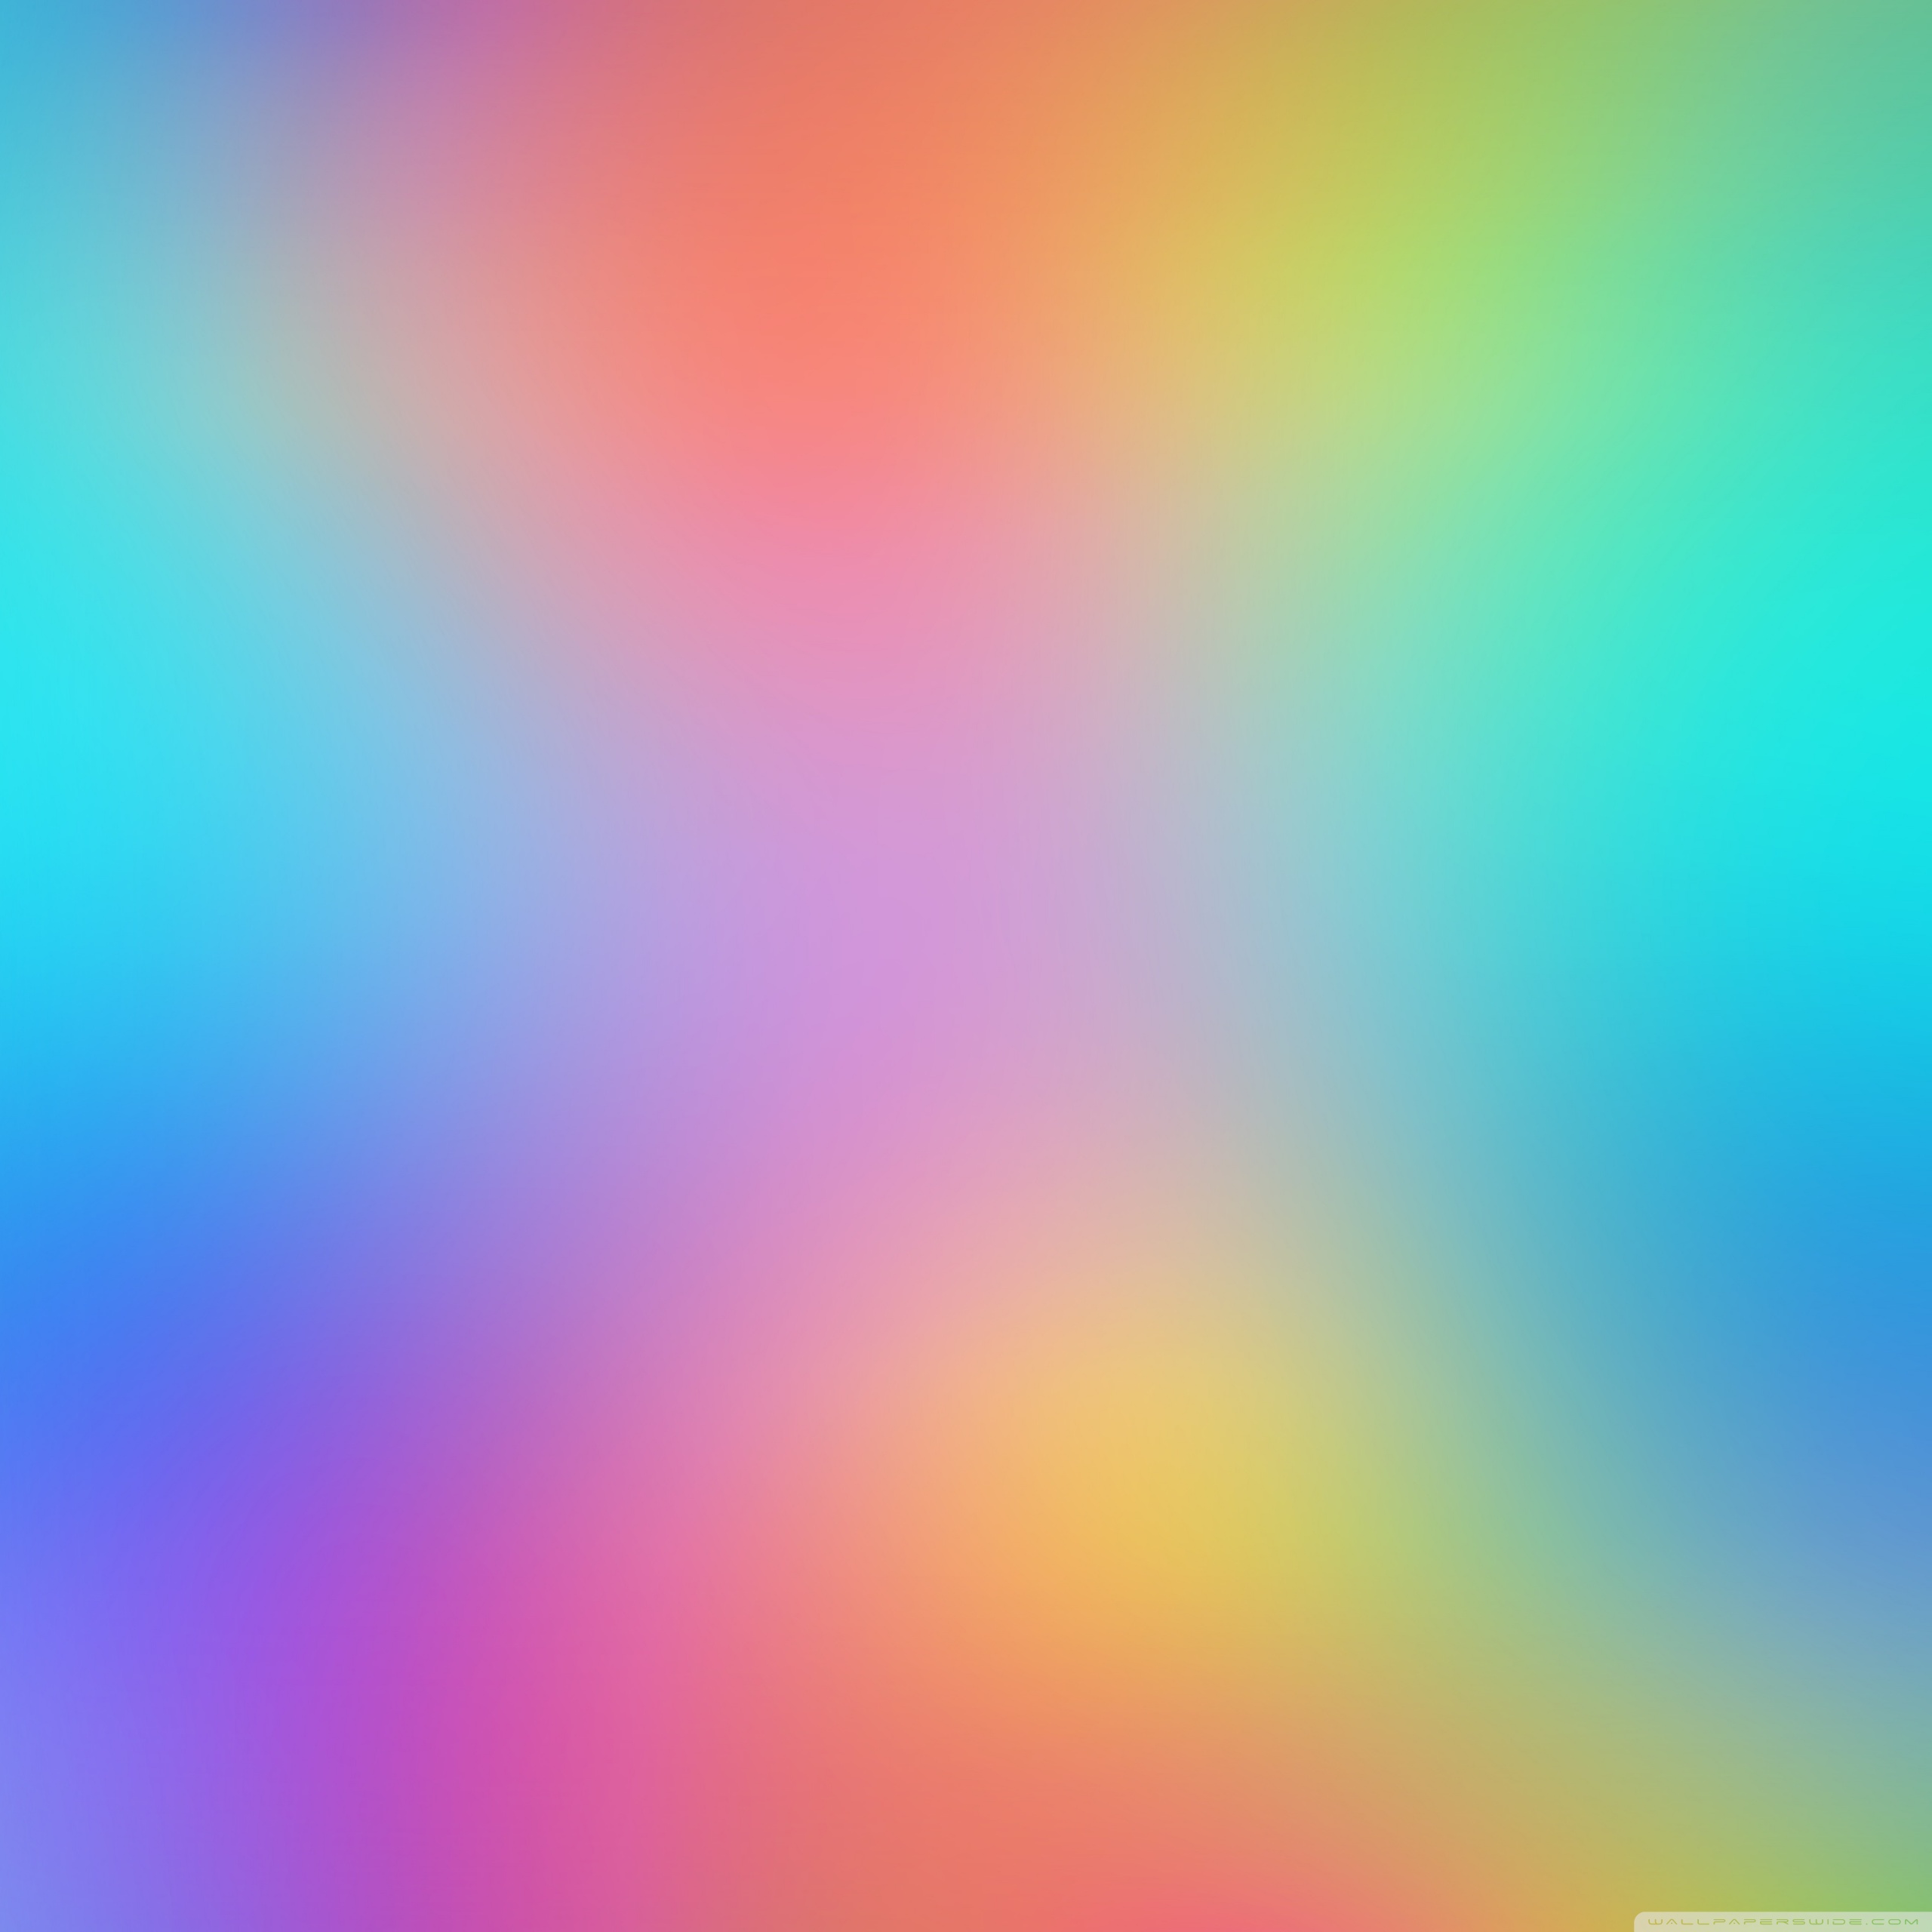 Colorful Desktop Backgrounds Ultra HD Desktop Background Wallpaper for ...